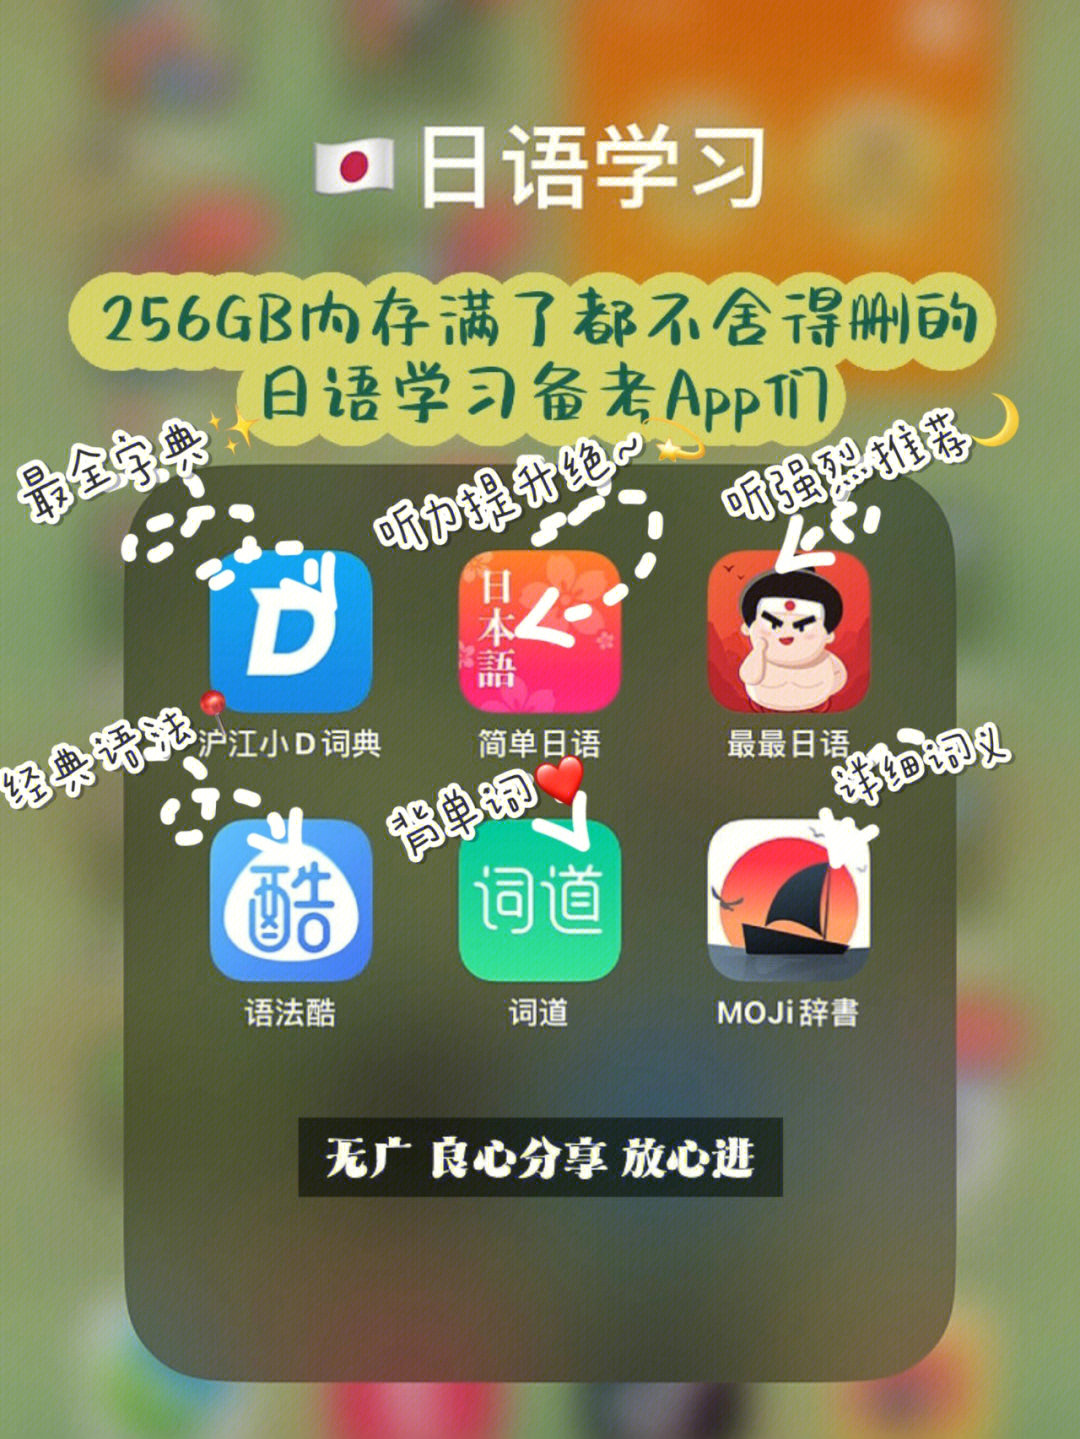 这里有我一直在用的日语学习app,学日语方便很多93,零基础小白也可